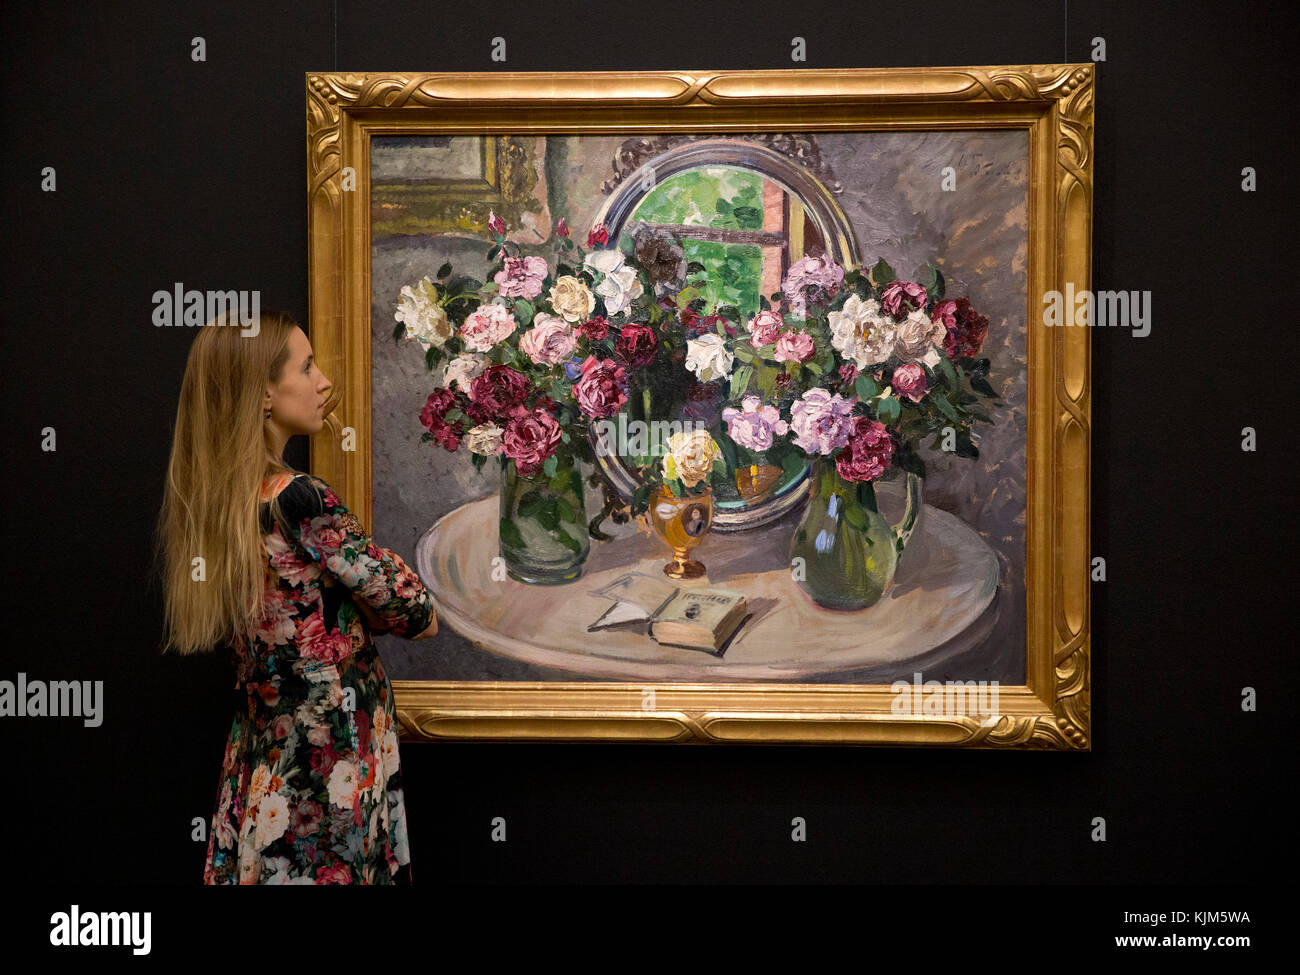 Un membre du personnel se penche sur "still life with flowers" par Alexandre mikhaïlovitch, 1935, (est. &Pound;250,000-350,000) qui fait partie de sotheby&otilde;s vente inaugurale de l'art de l'URSS à Londres pour coïncider avec le 100e anniversaire de la révolution russe de 1917. Banque D'Images